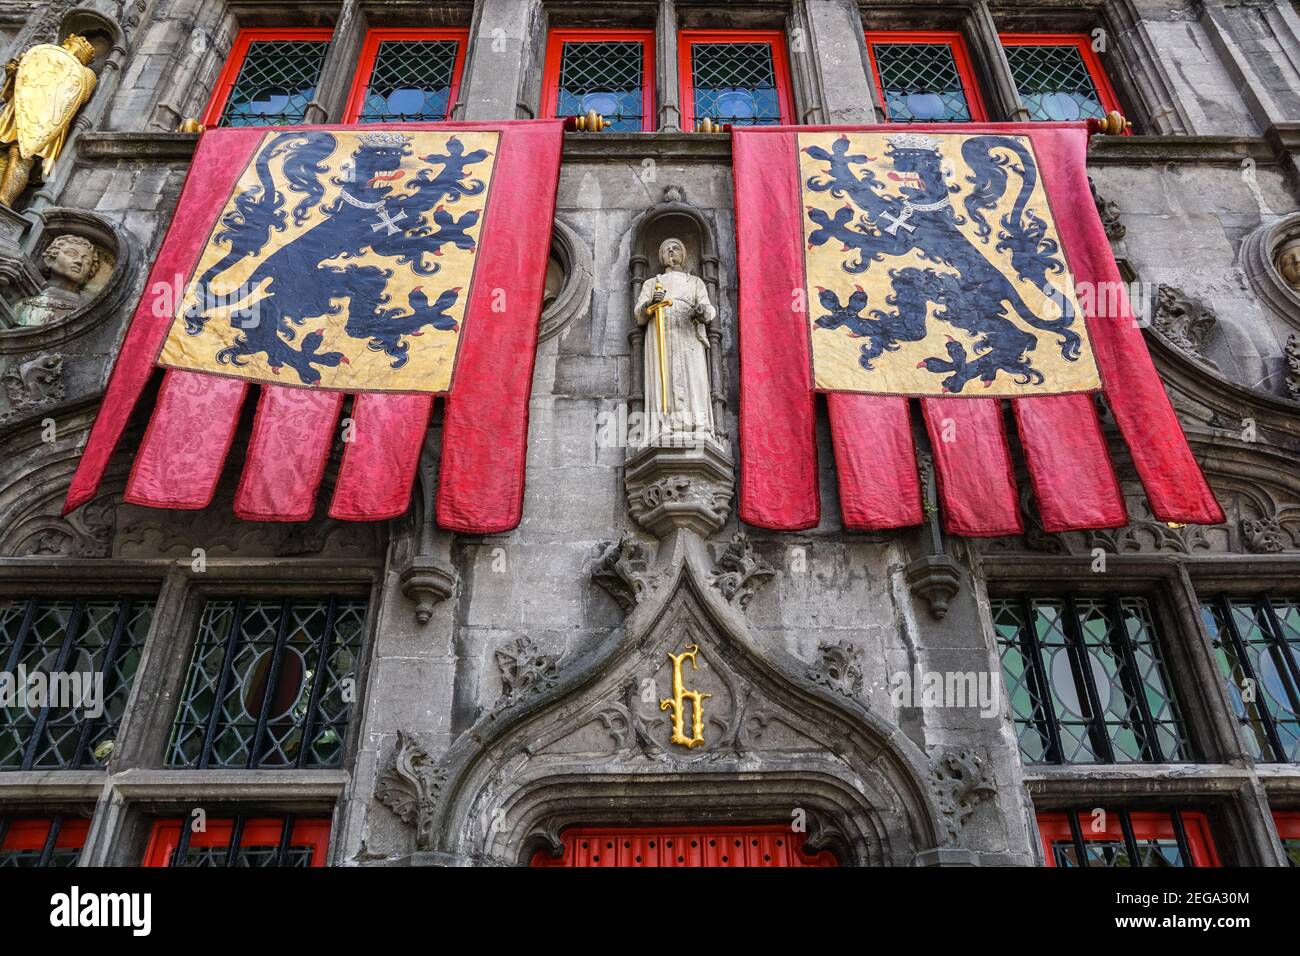 La basilique du Saint-sang, basilique catholique romaine décorée de drapeaux à Bruges, Belgique Banque D'Images